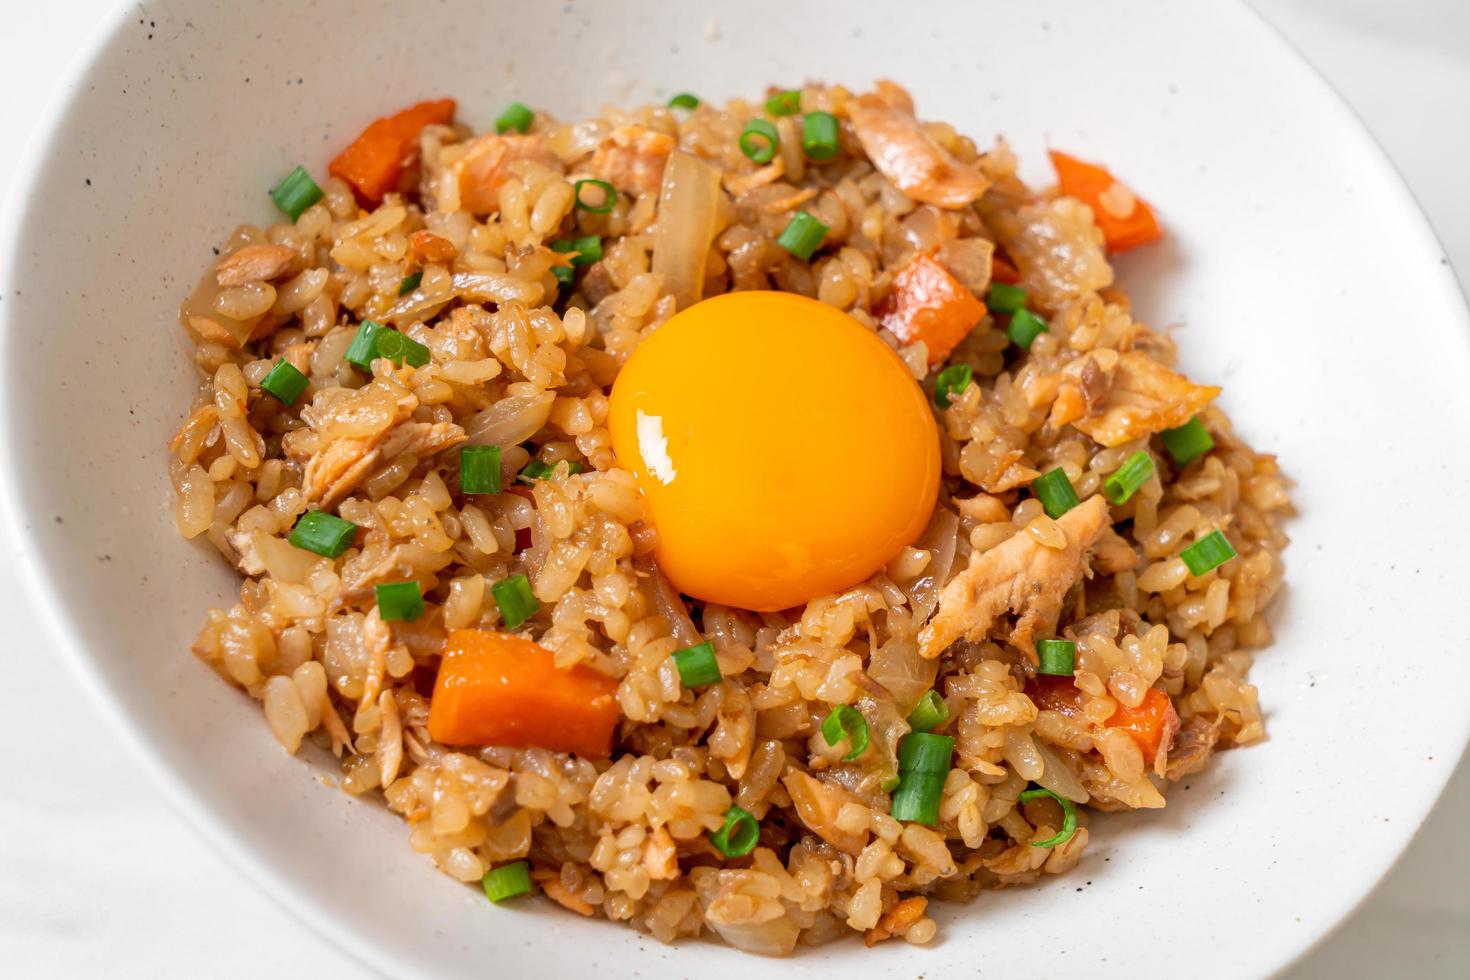 zalm gebakken rijst met gepekeld ei erop - Aziatische voedselstijl foto